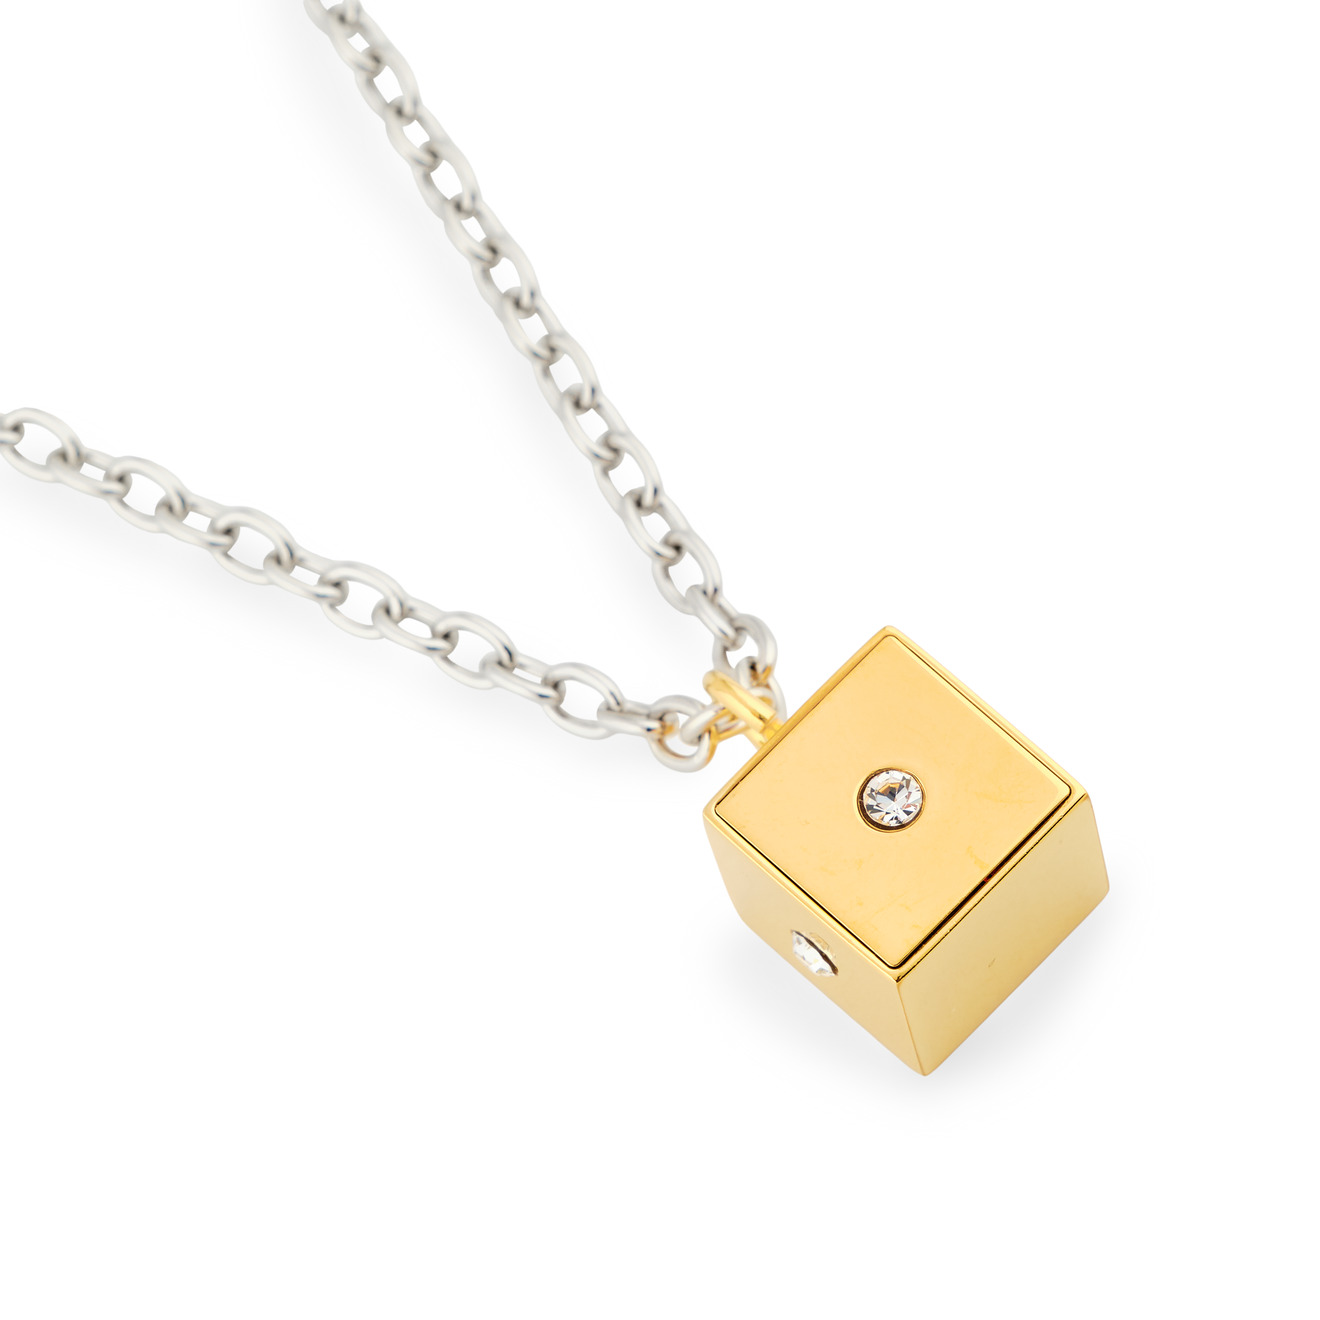 Marni Колье-подвеска золотистый кубик с гравировкой из кристаллов подвеска кулон на шею золотистый бижутерия xuping